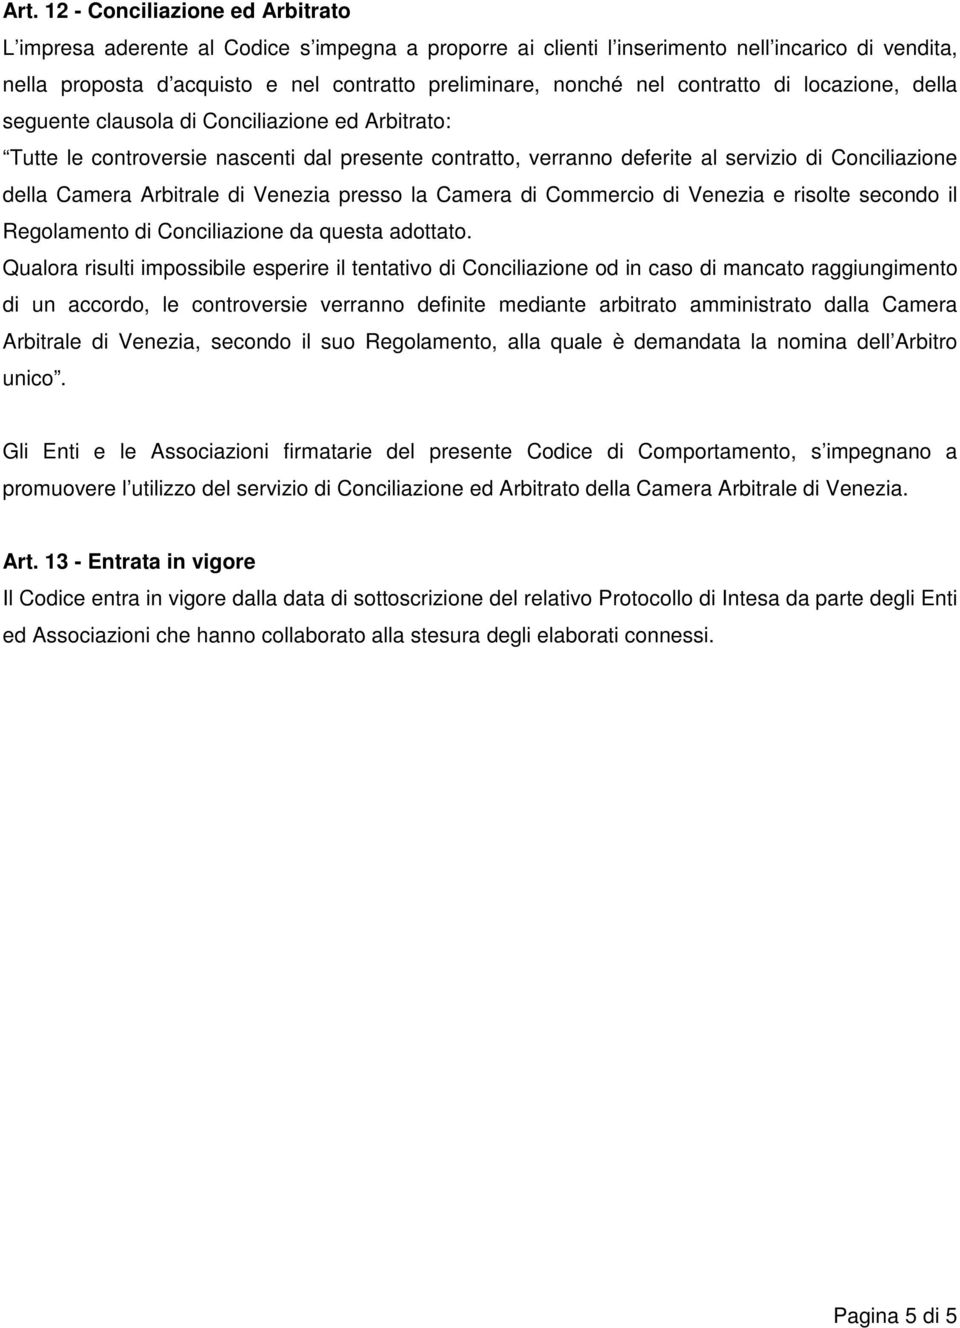 Arbitrale di Venezia presso la Camera di Commercio di Venezia e risolte secondo il Regolamento di Conciliazione da questa adottato.